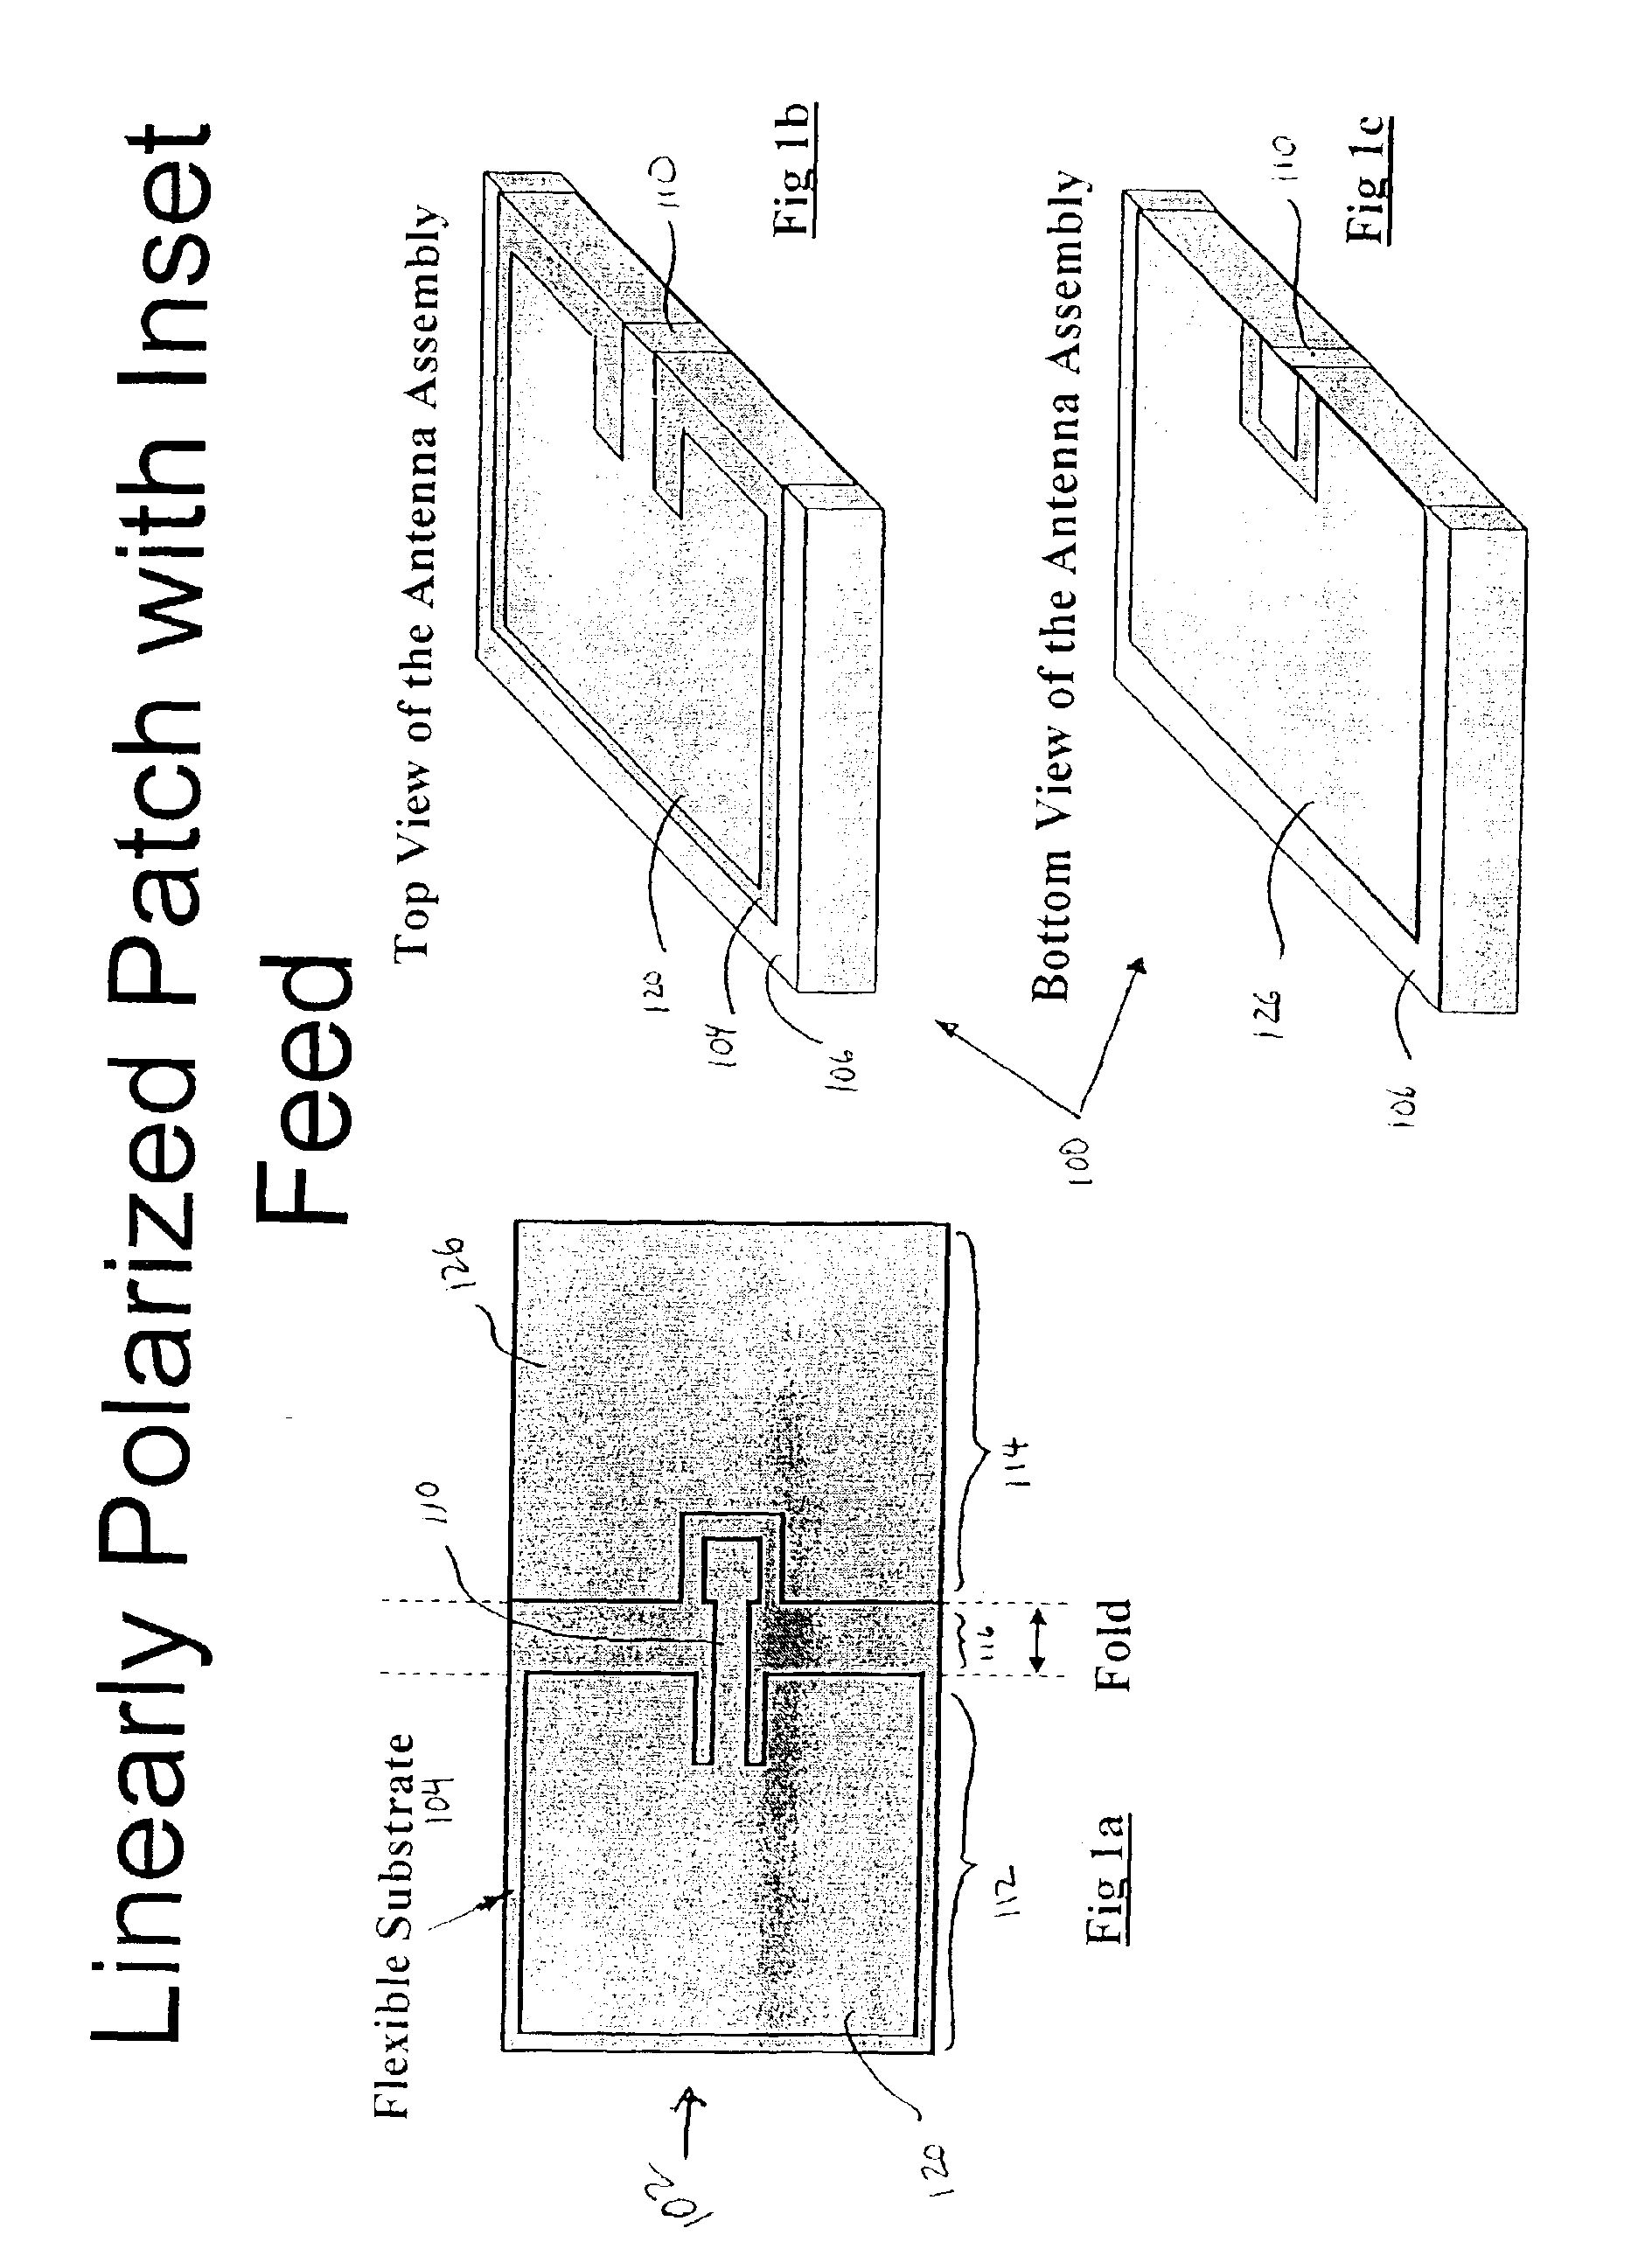 Method for fabrication of miniature lightweight antennas